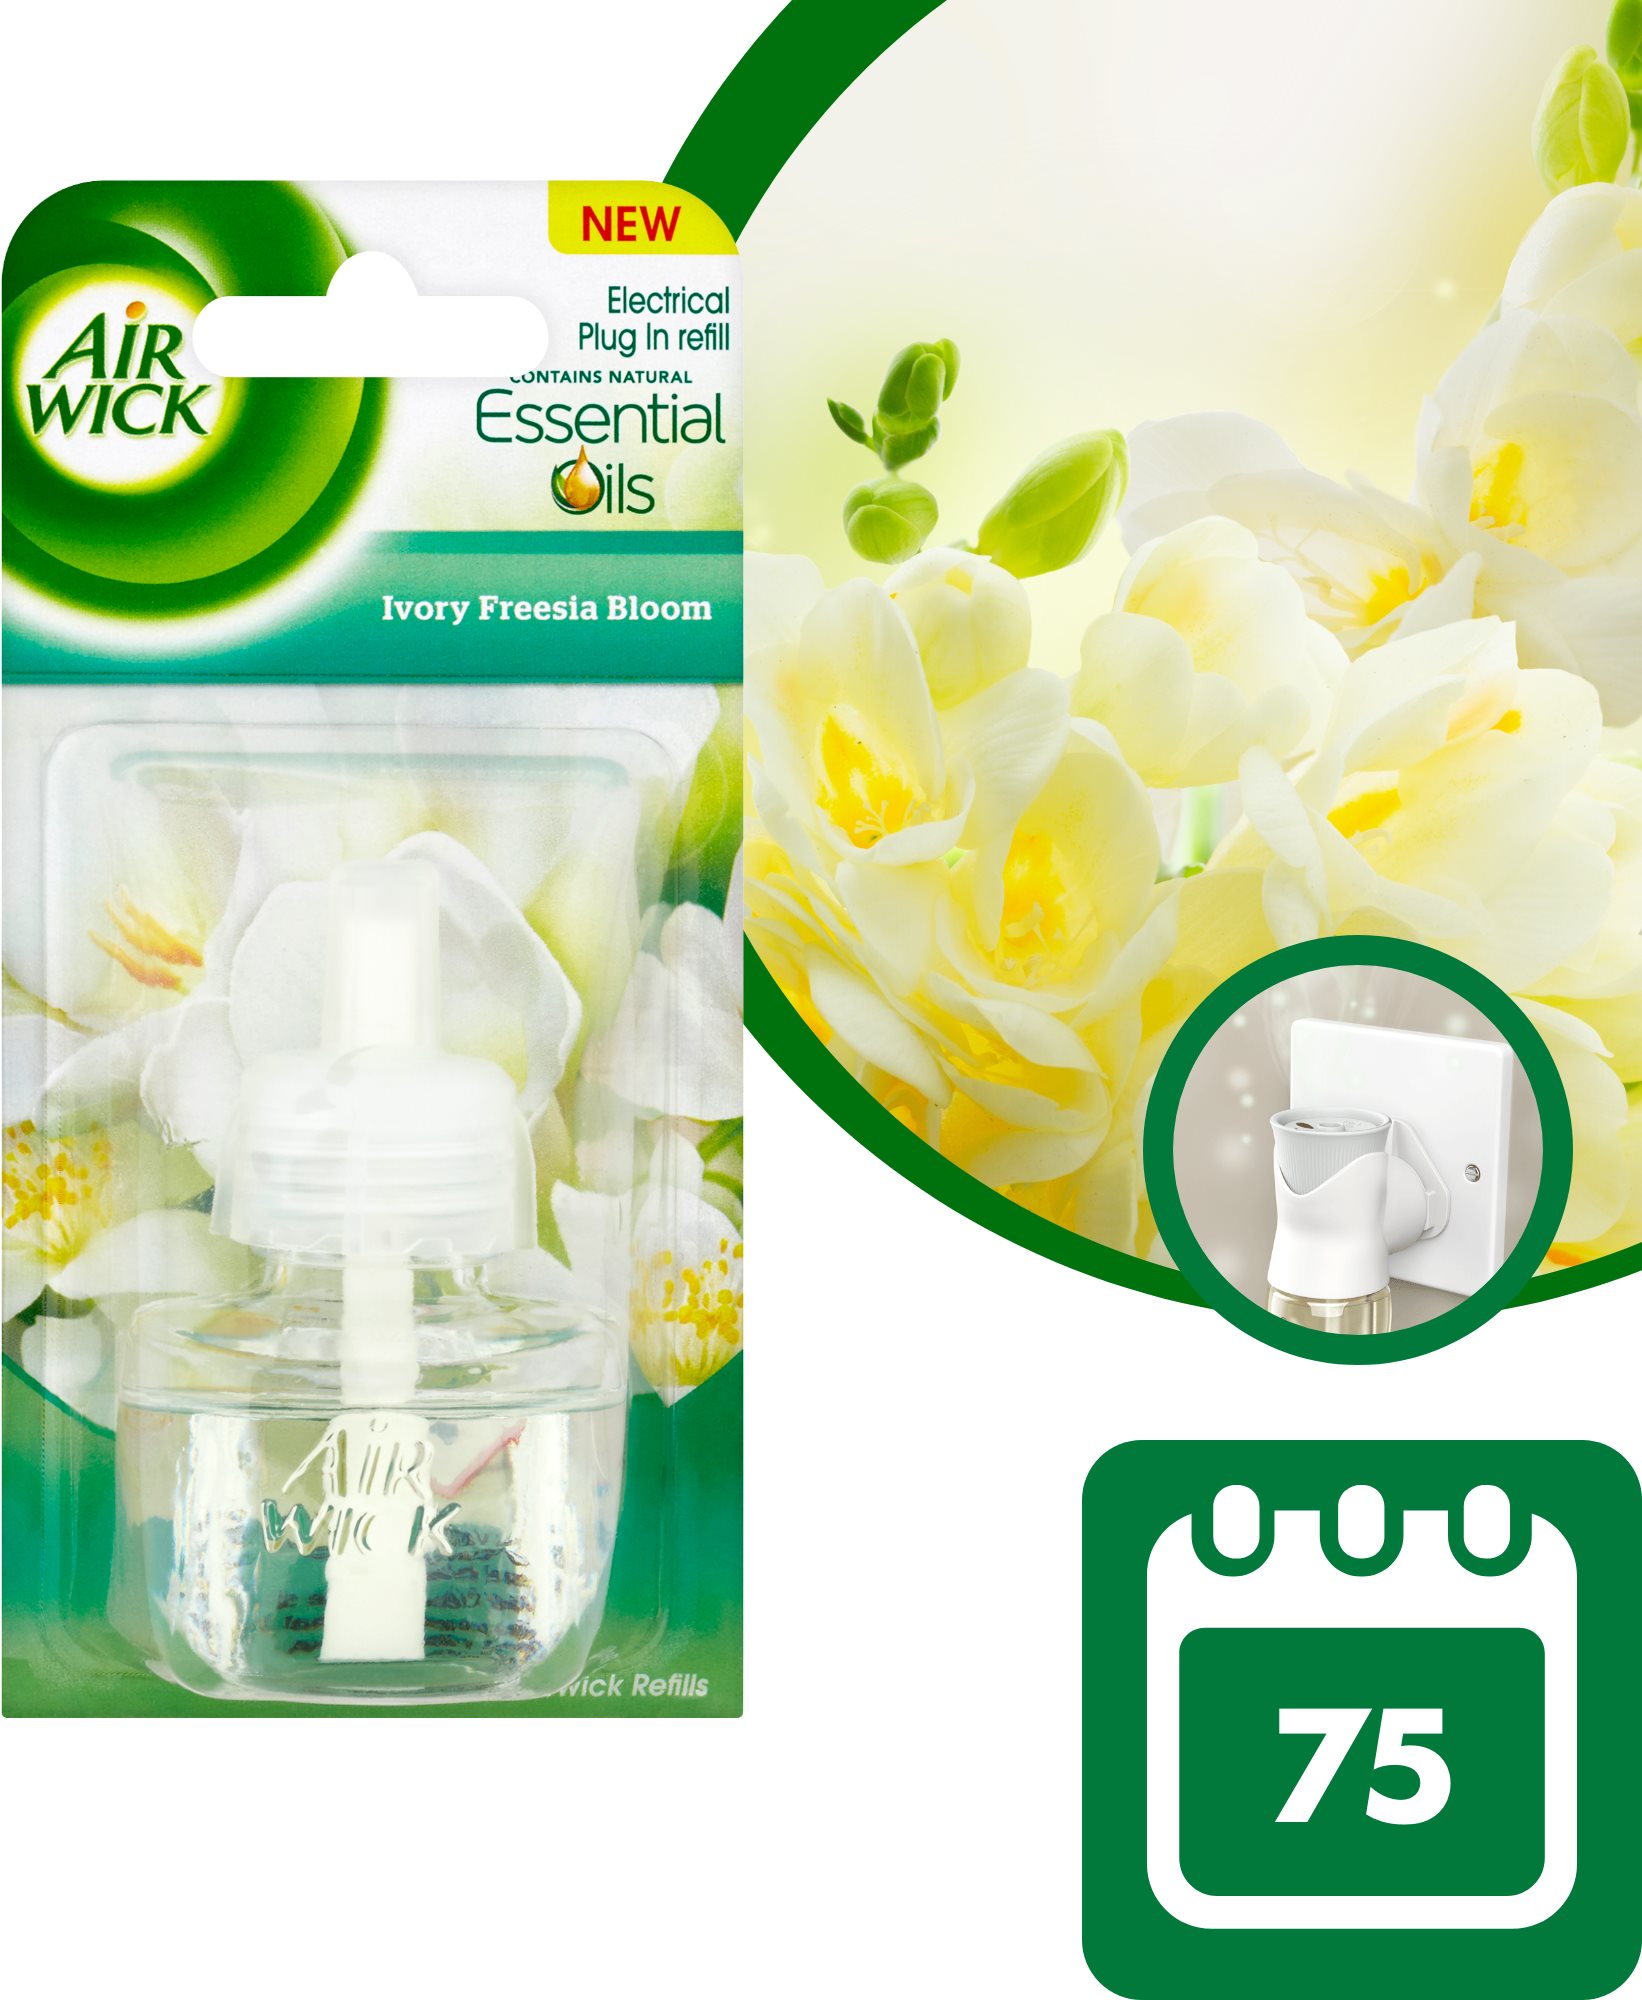 Légfrissítő AIR WICK folyékony utántöltő elktromos légfrissítőbe - Fehér virágok 19 ml